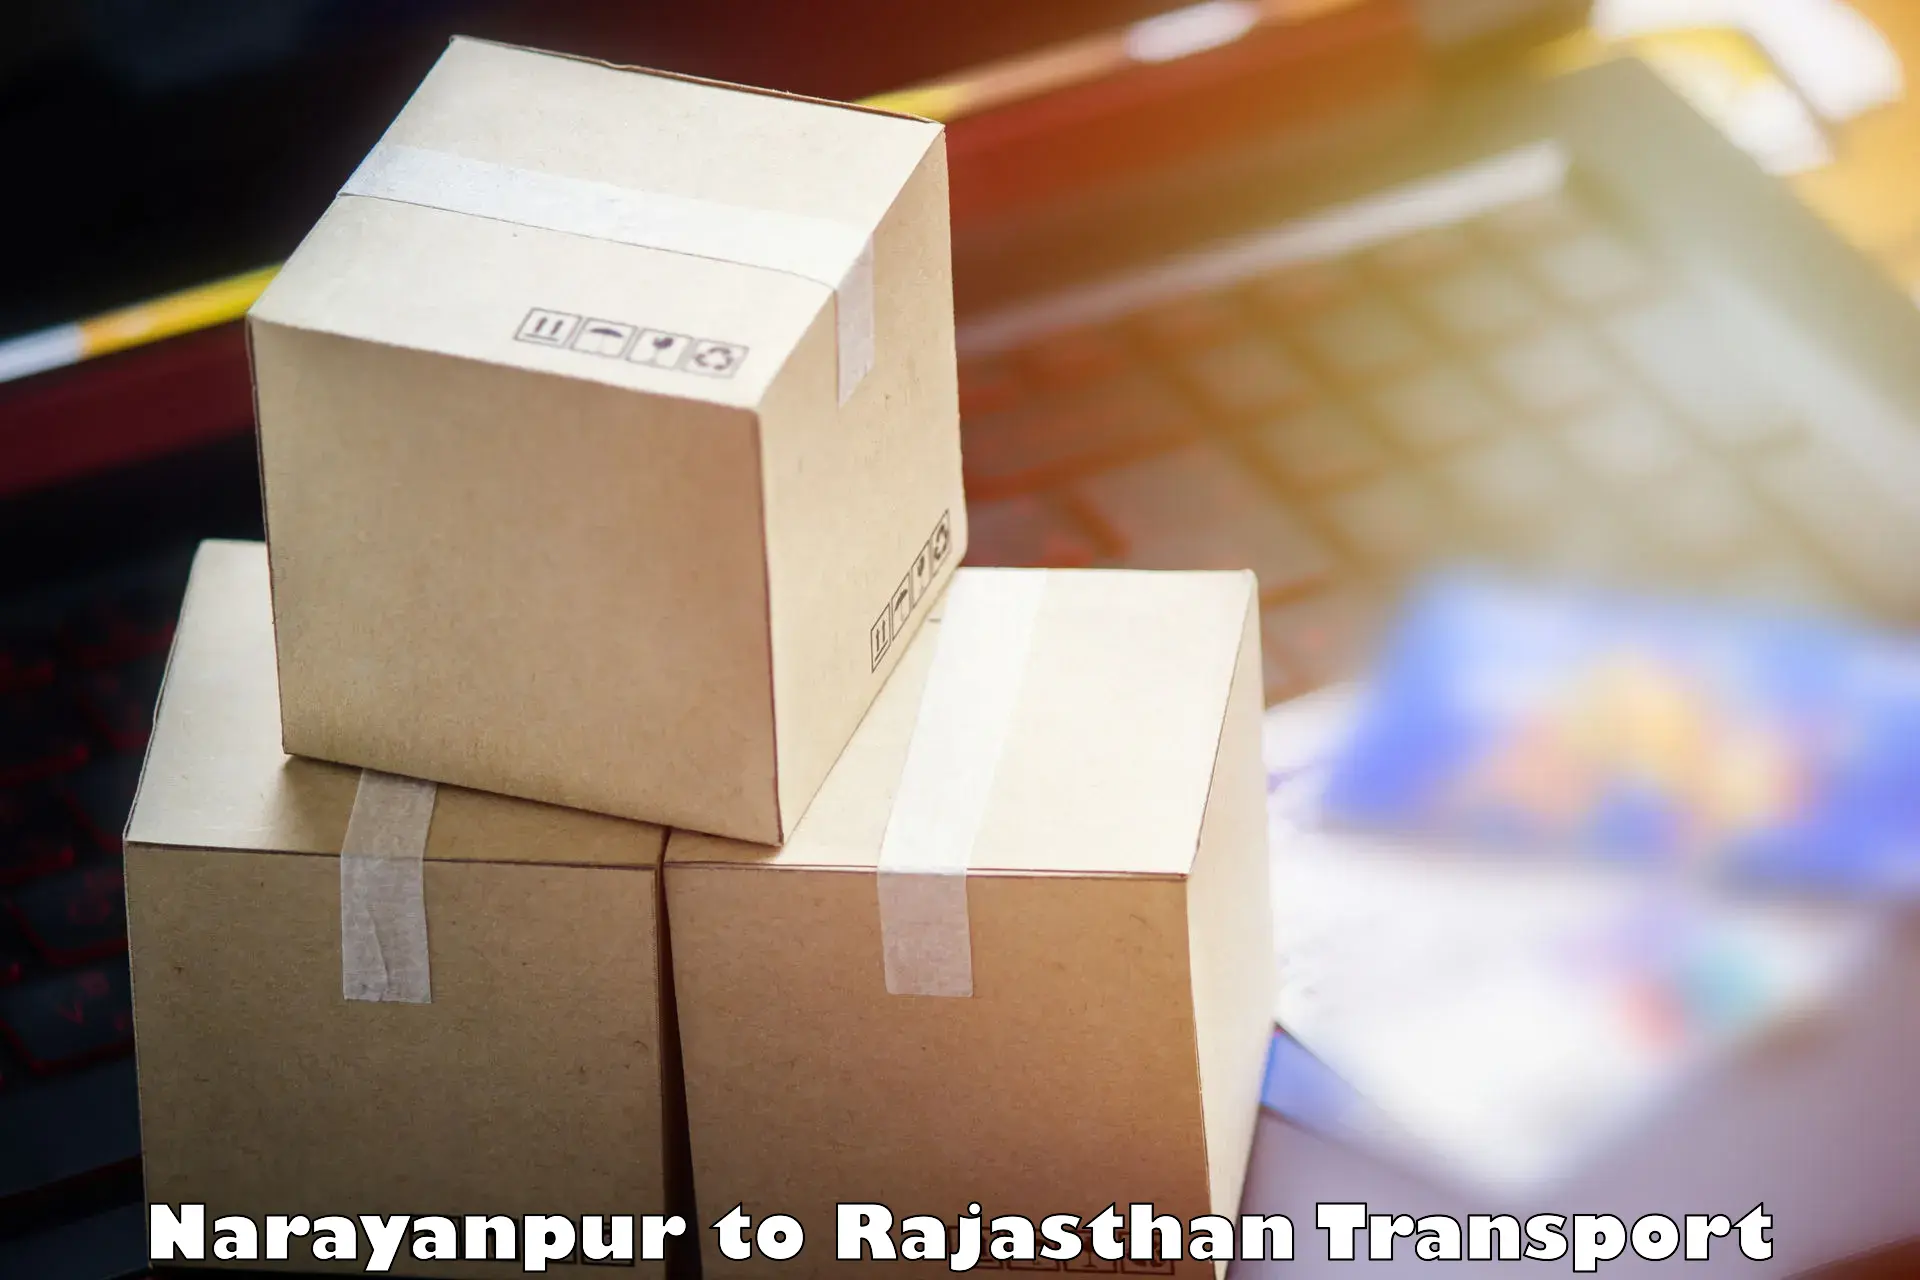 India truck logistics services Narayanpur to Viratnagar